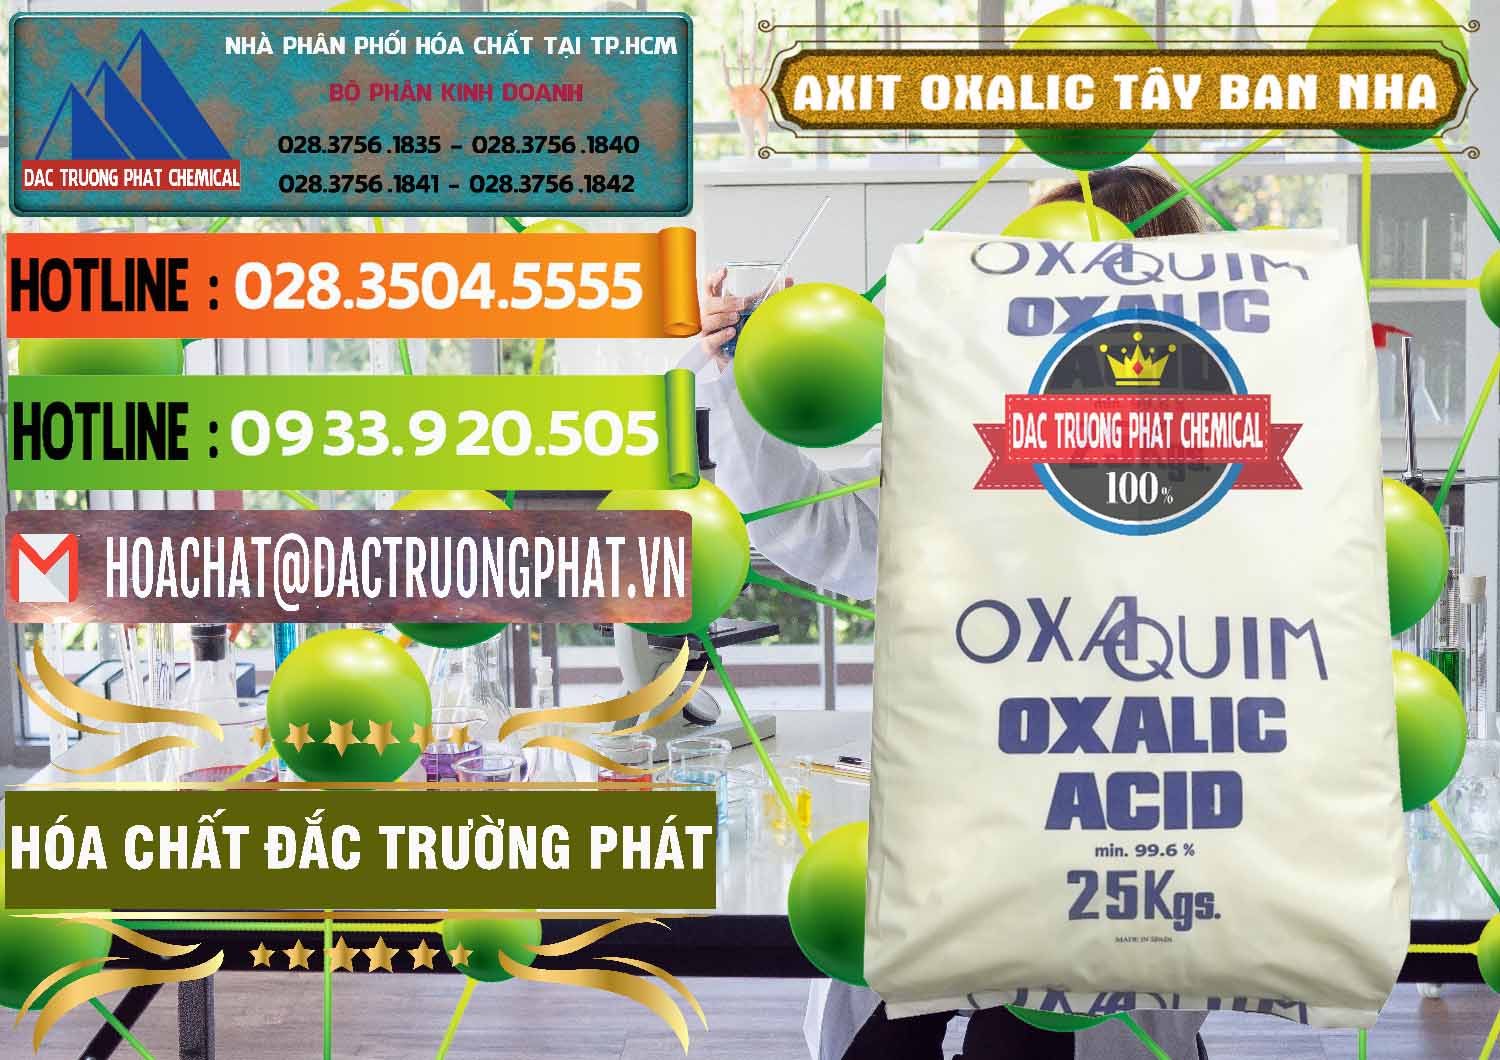 Đơn vị chuyên cung cấp _ bán Acid Oxalic – Axit Oxalic 99.6% Tây Ban Nha Spain - 0269 - Đơn vị chuyên cung cấp và kinh doanh hóa chất tại TP.HCM - cungcaphoachat.com.vn